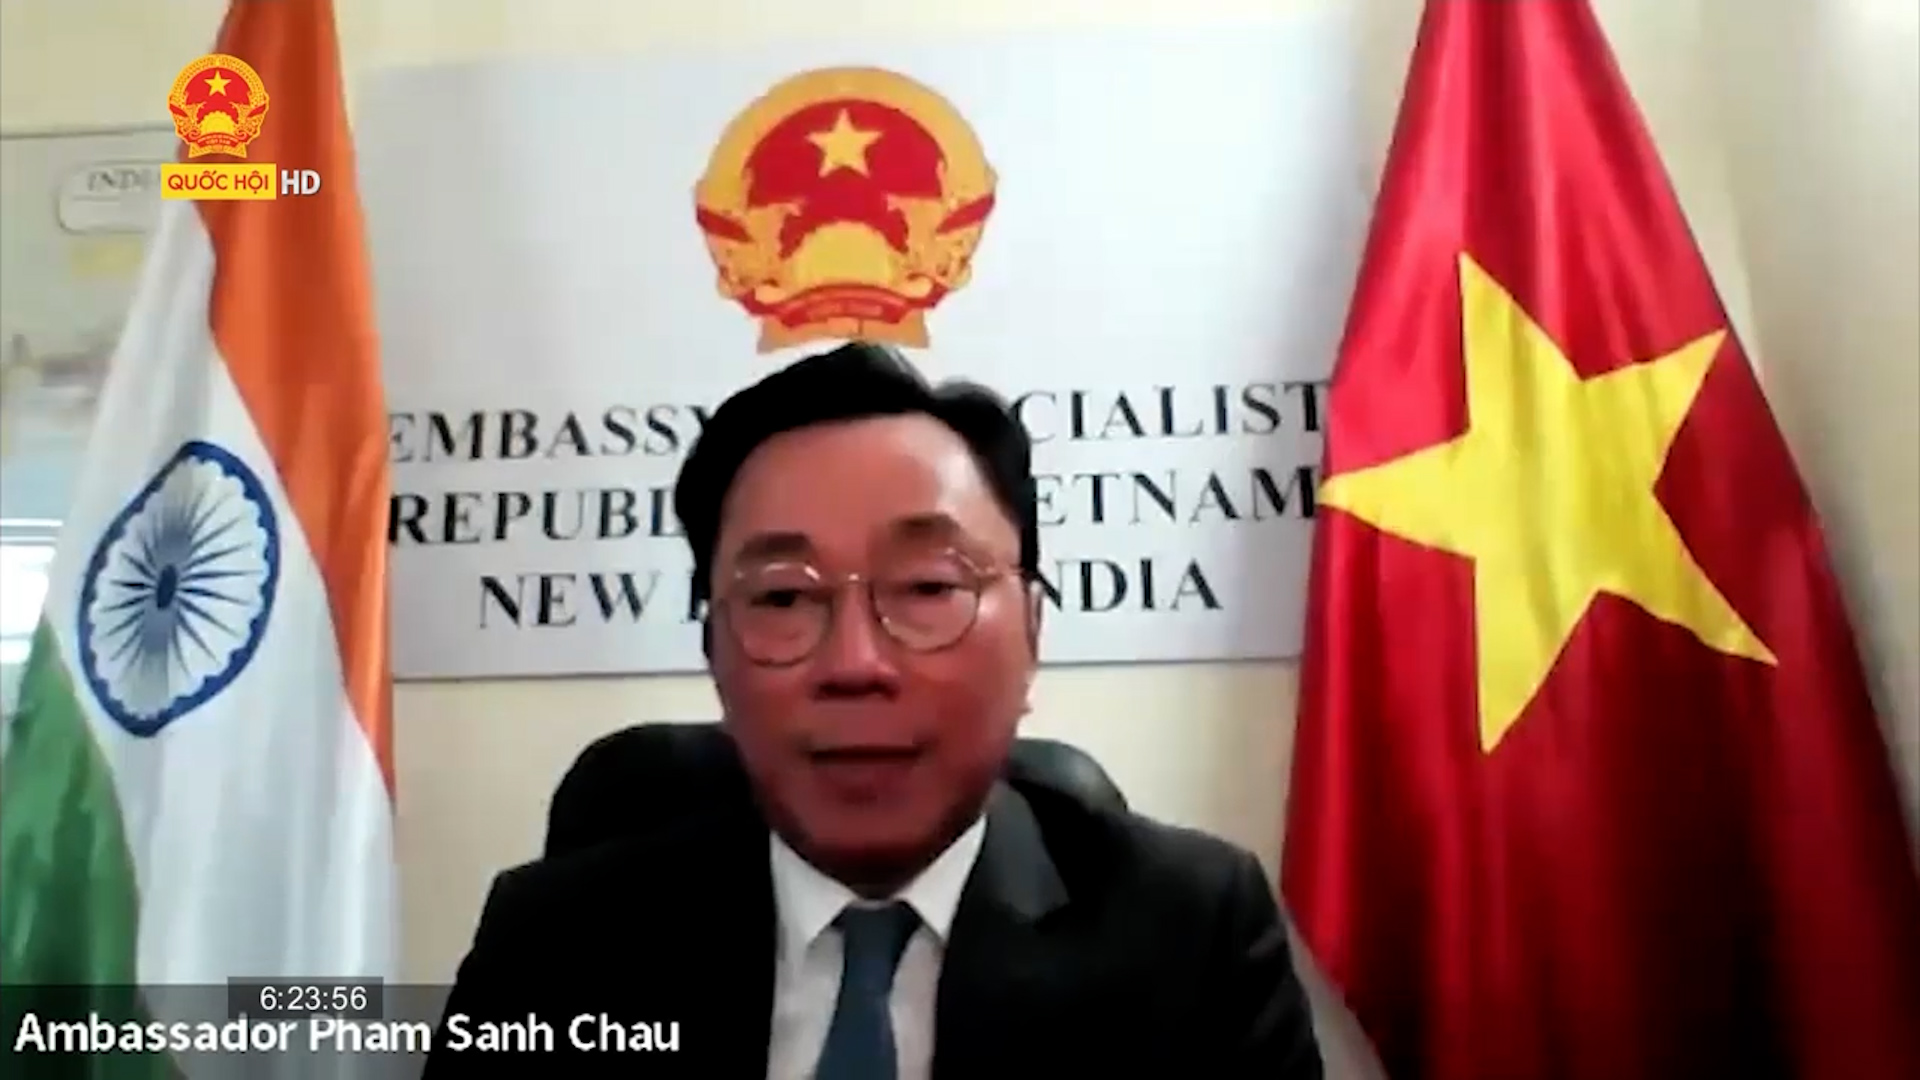 Việt Nam đóng vai trò hàng đầu trong chính sách “Hành động hướng Đông của Ấn Độ”